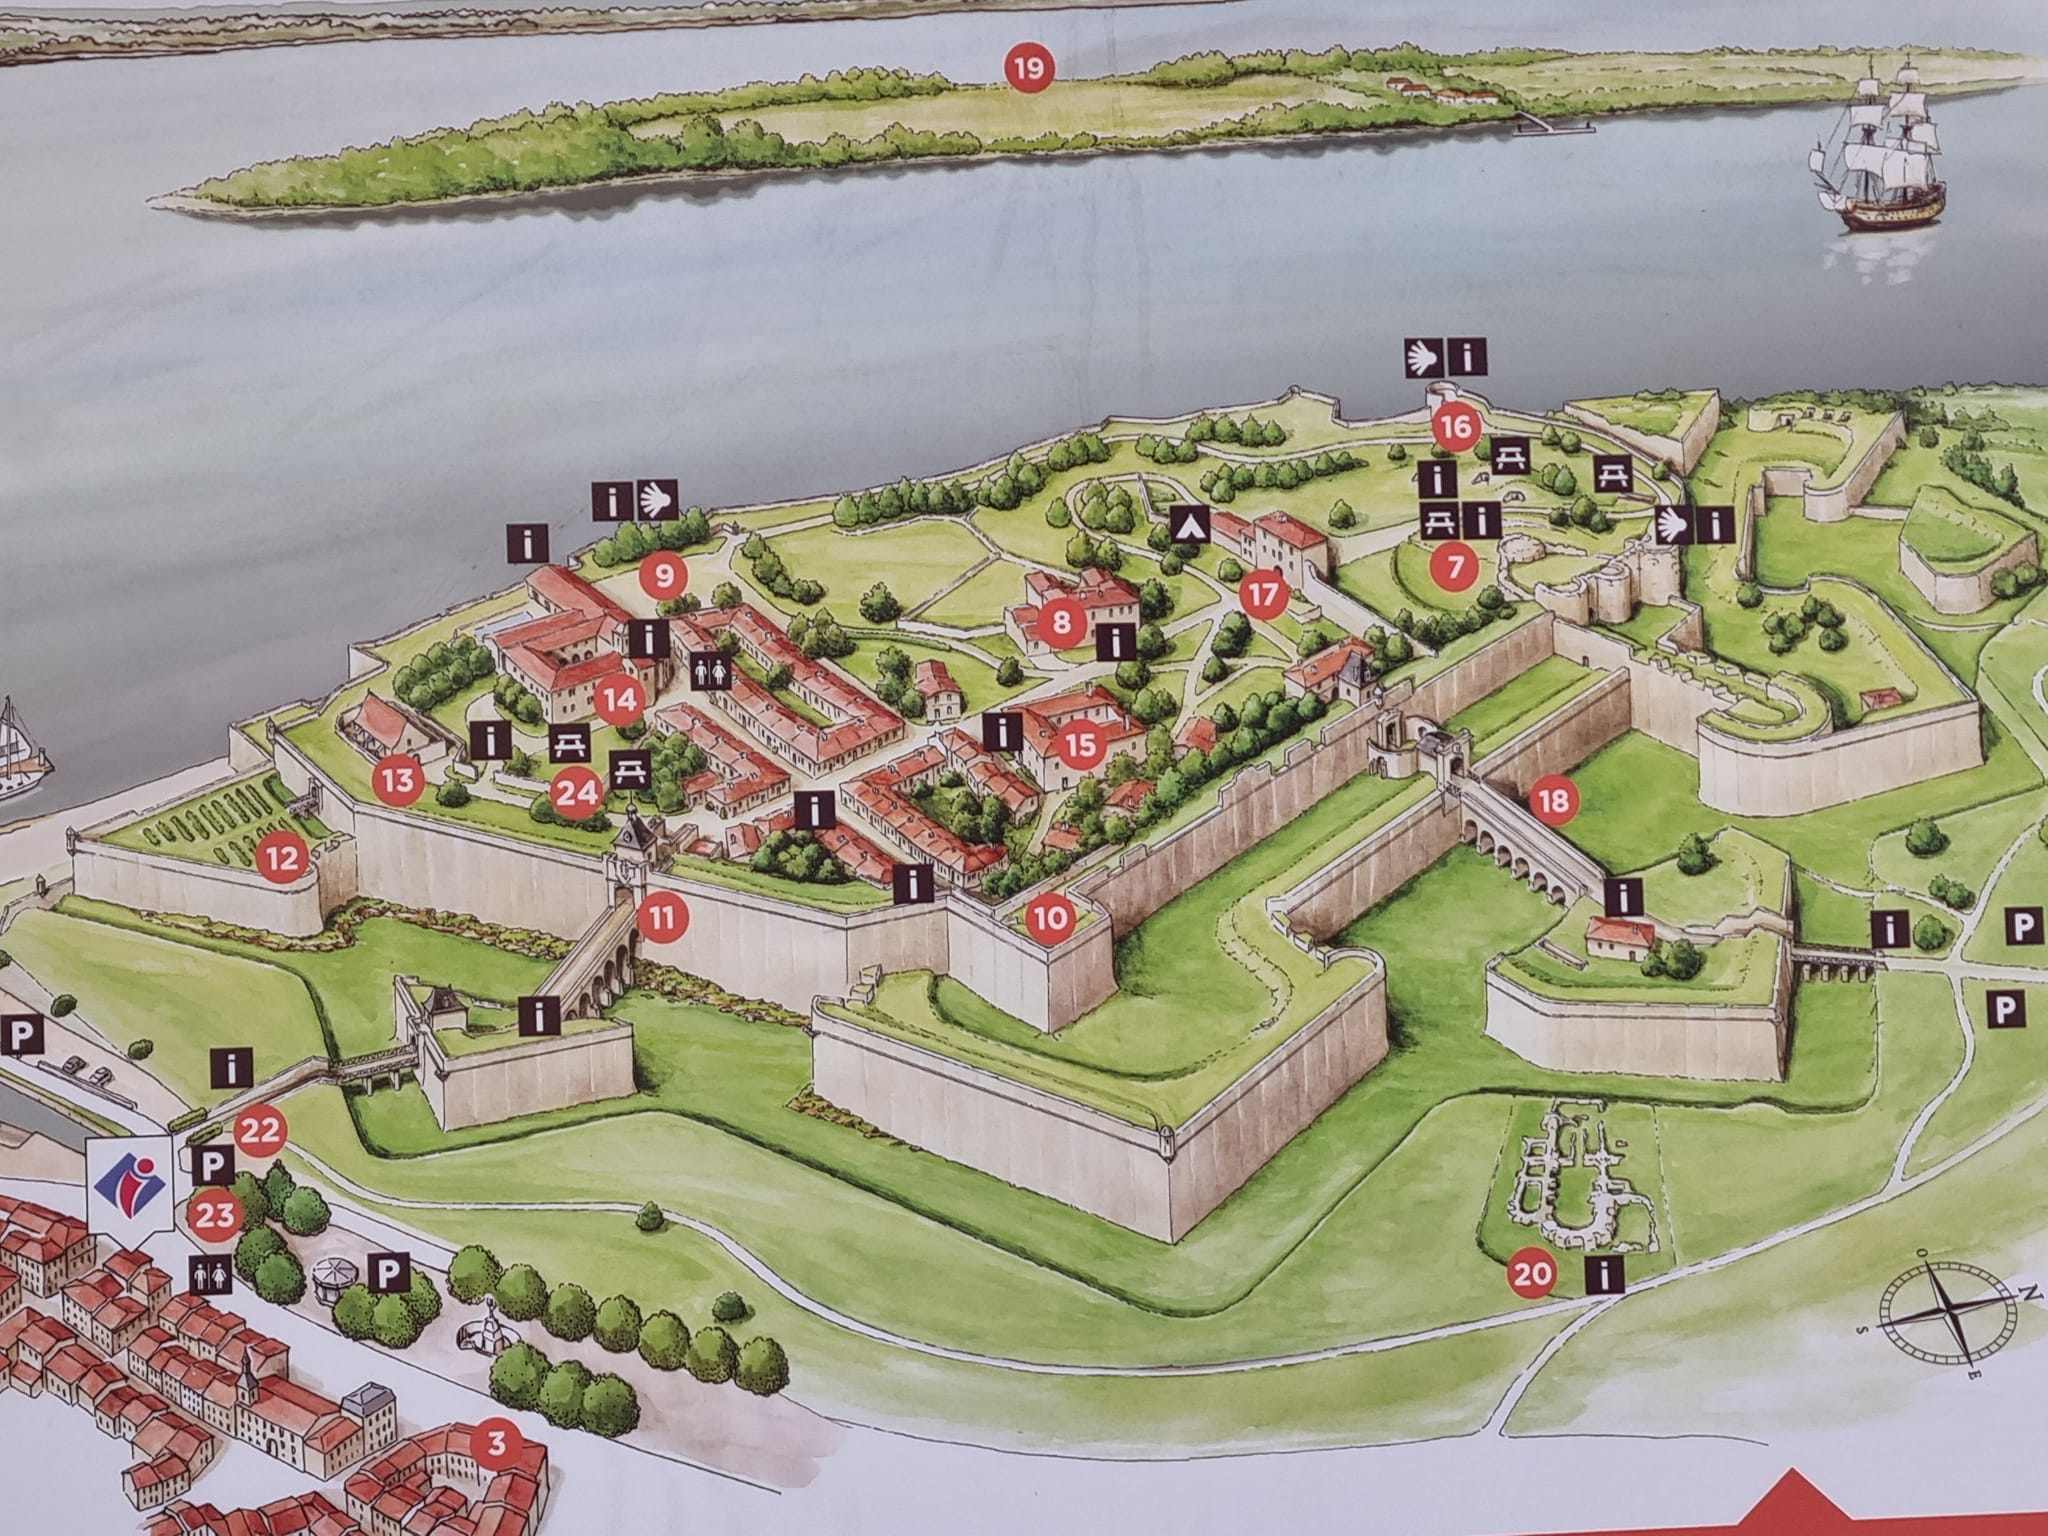 מפת המצודה של ליבורן, כפי שנראתה בתקופת לואי ה-14. תותחיה נועדו להגן על הכניסה לנמל העיר בורדו